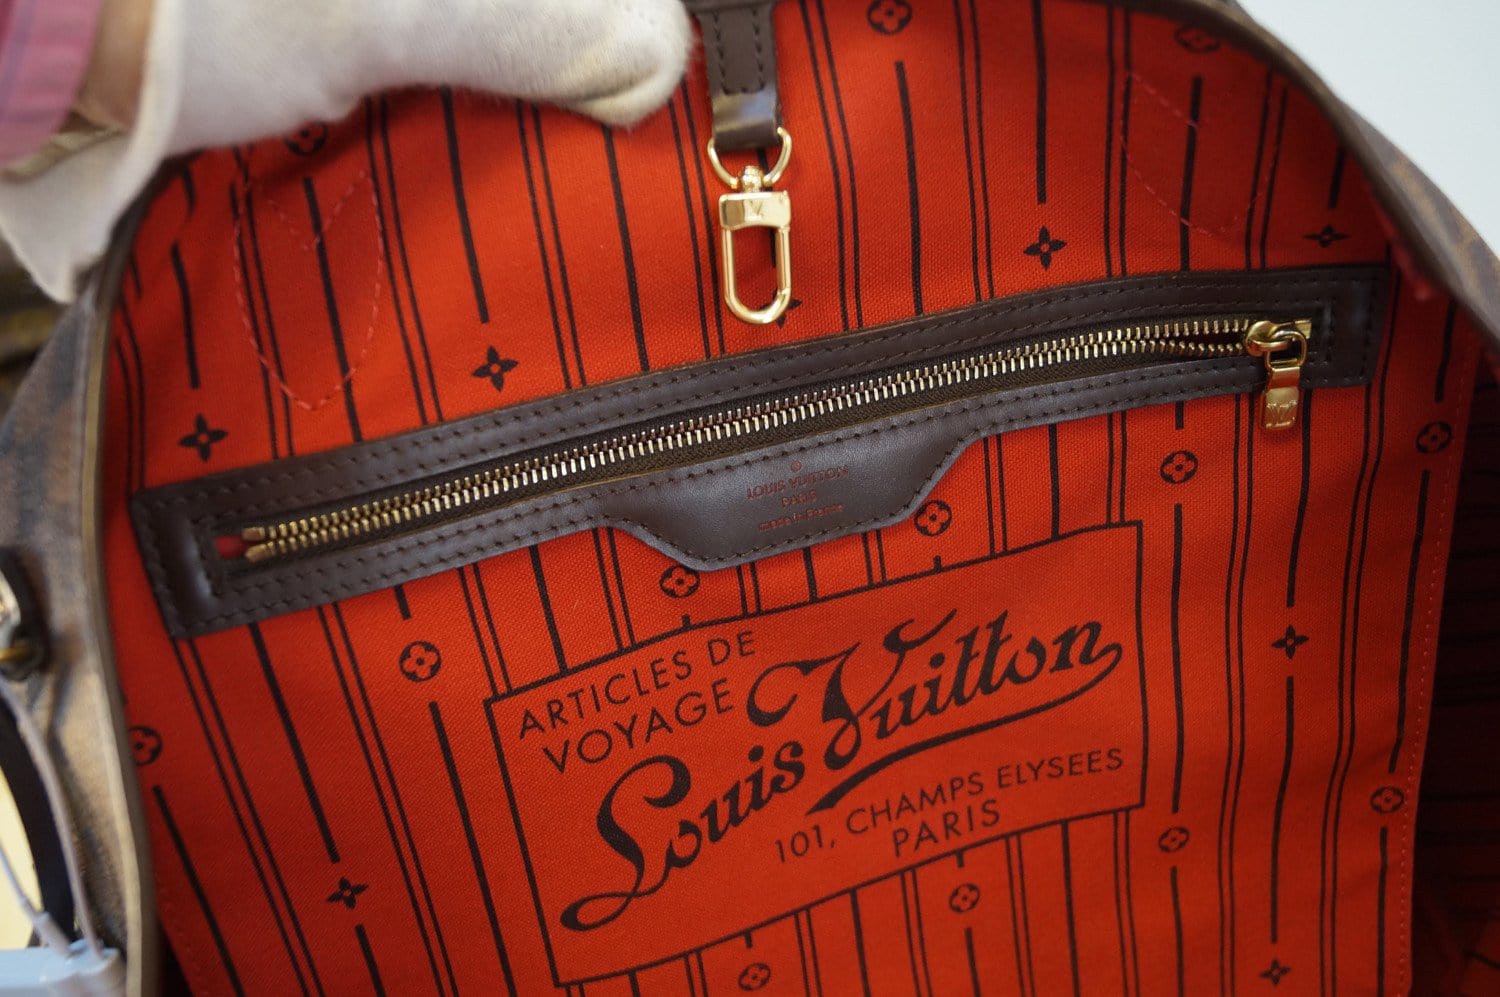 100% Original Louis Vuitton 101 Champs Elysees Bag Louis Vuitton